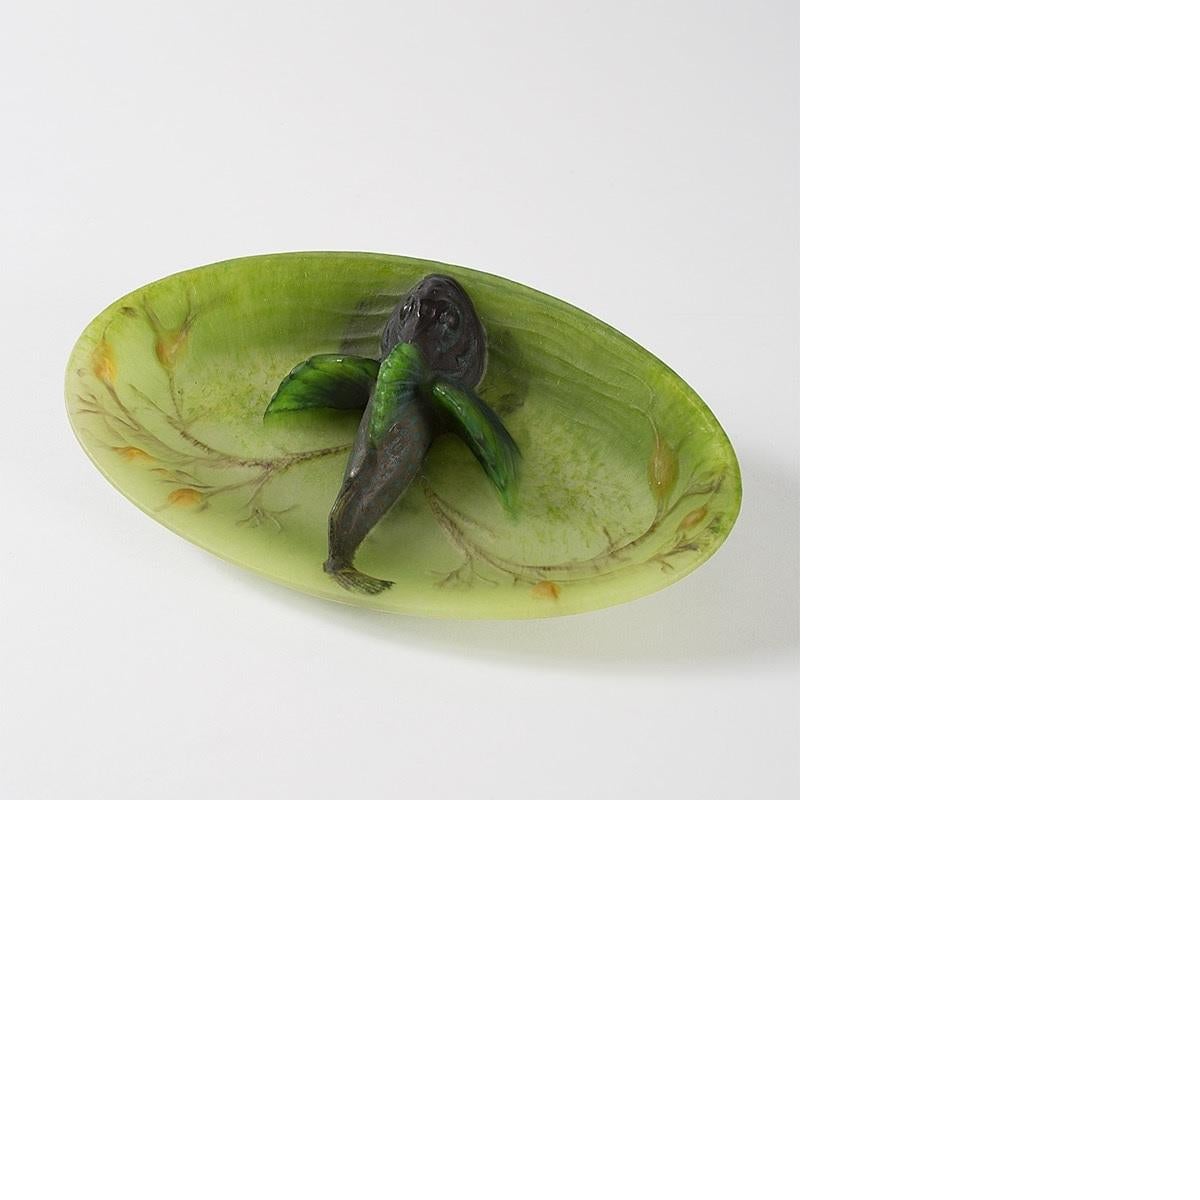 Un plat en pâte de verre Art Nouveau français par Amalric Walter et Henri Bergé. Ce plateau est décoré d'une scène moulée de végétation aquatique brune et orange avec un grand poisson brun foncé avec des nageoires vertes et bleues et des taches